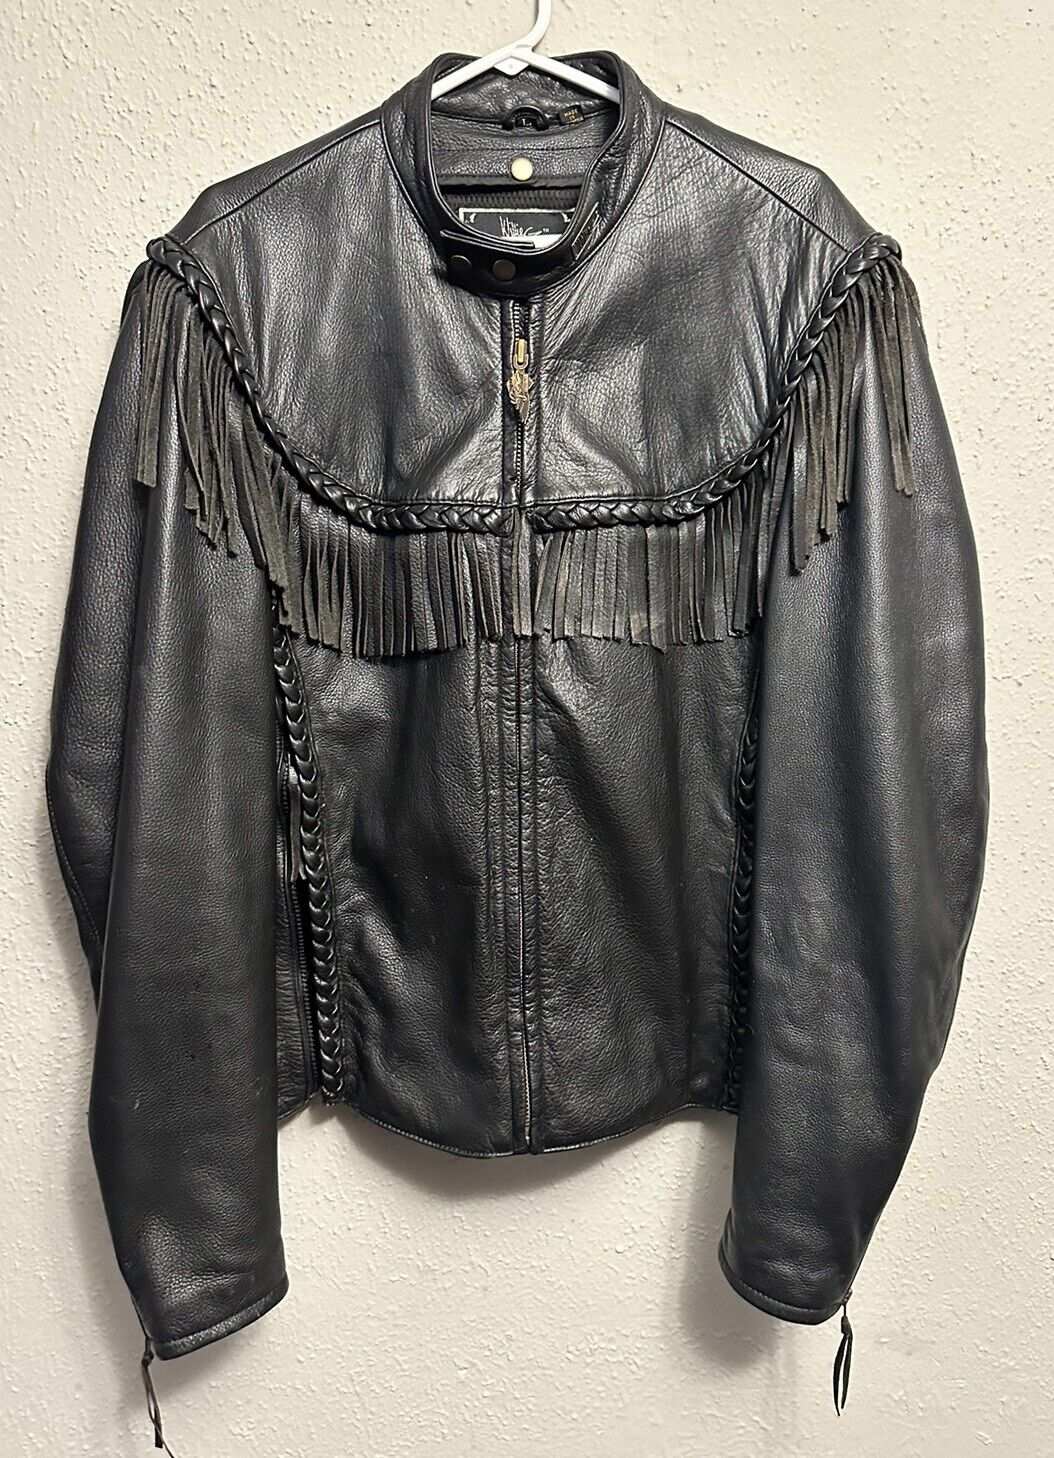 Vintage Willie G Harley Davidson Leather Jacket Sz L Rare 1980s